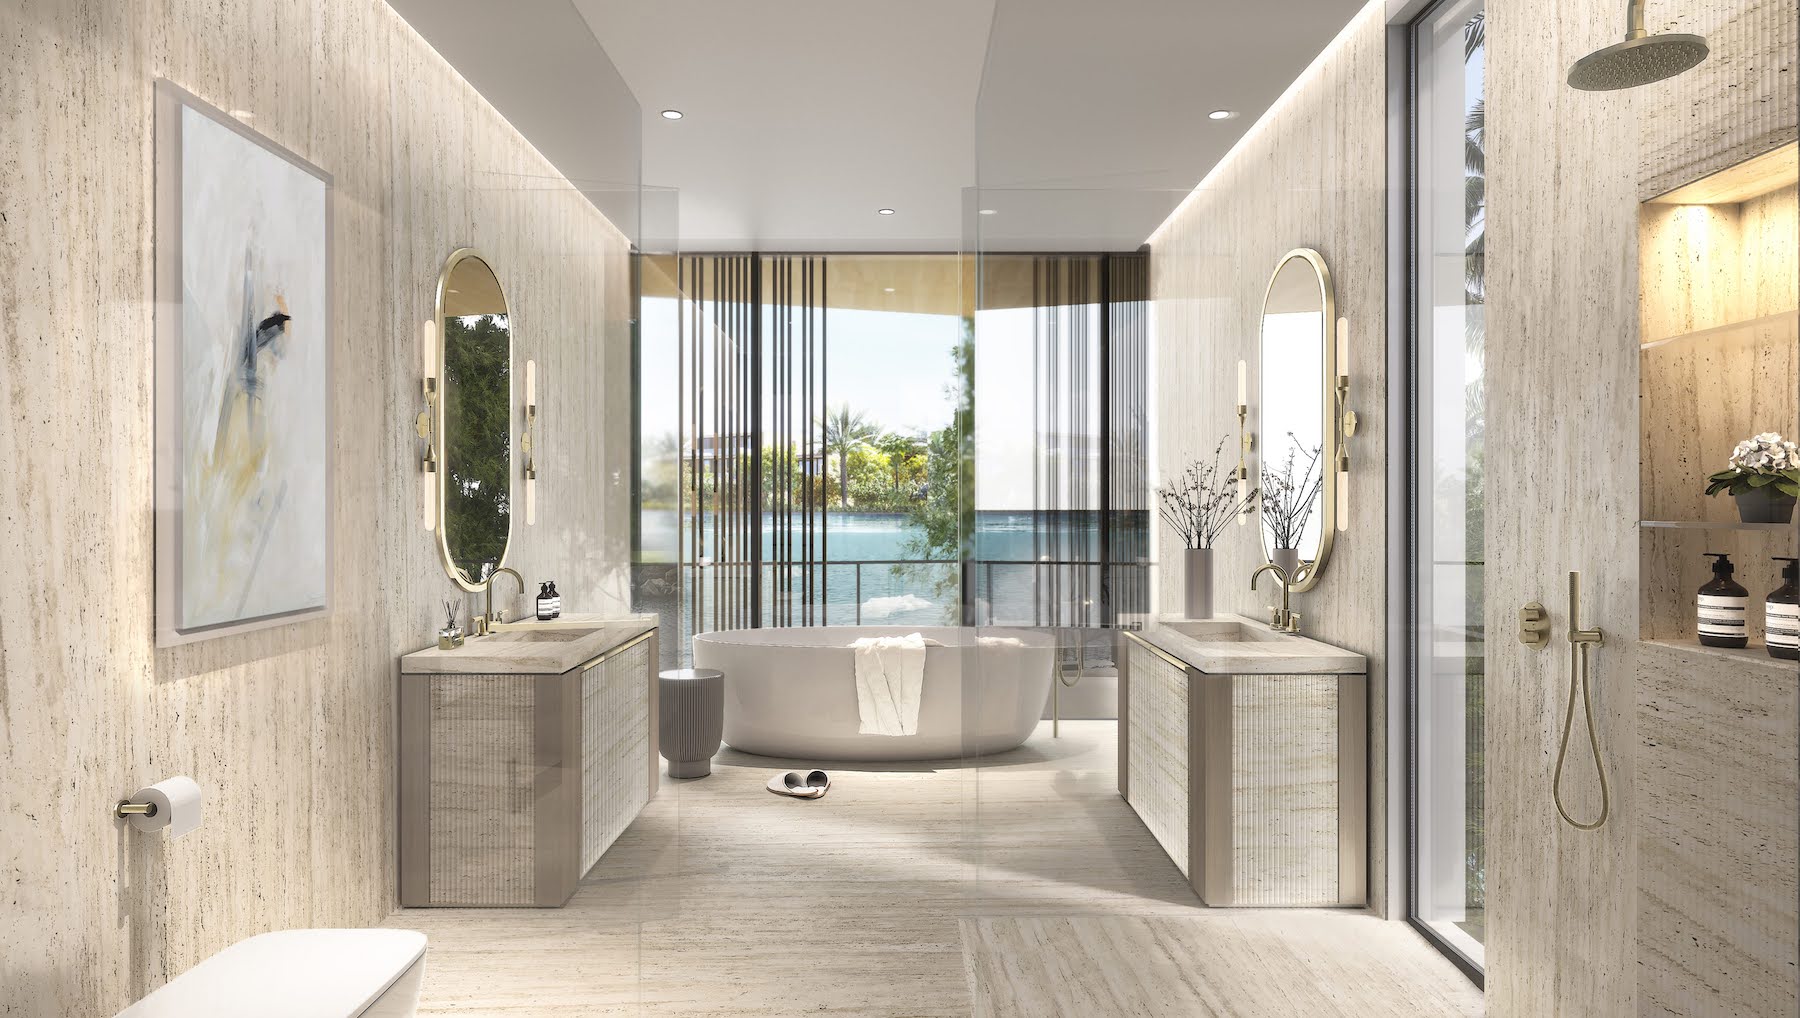 Bathroom in a private villa in Dubai interior designed by Bergman Design House in Effect Magazine